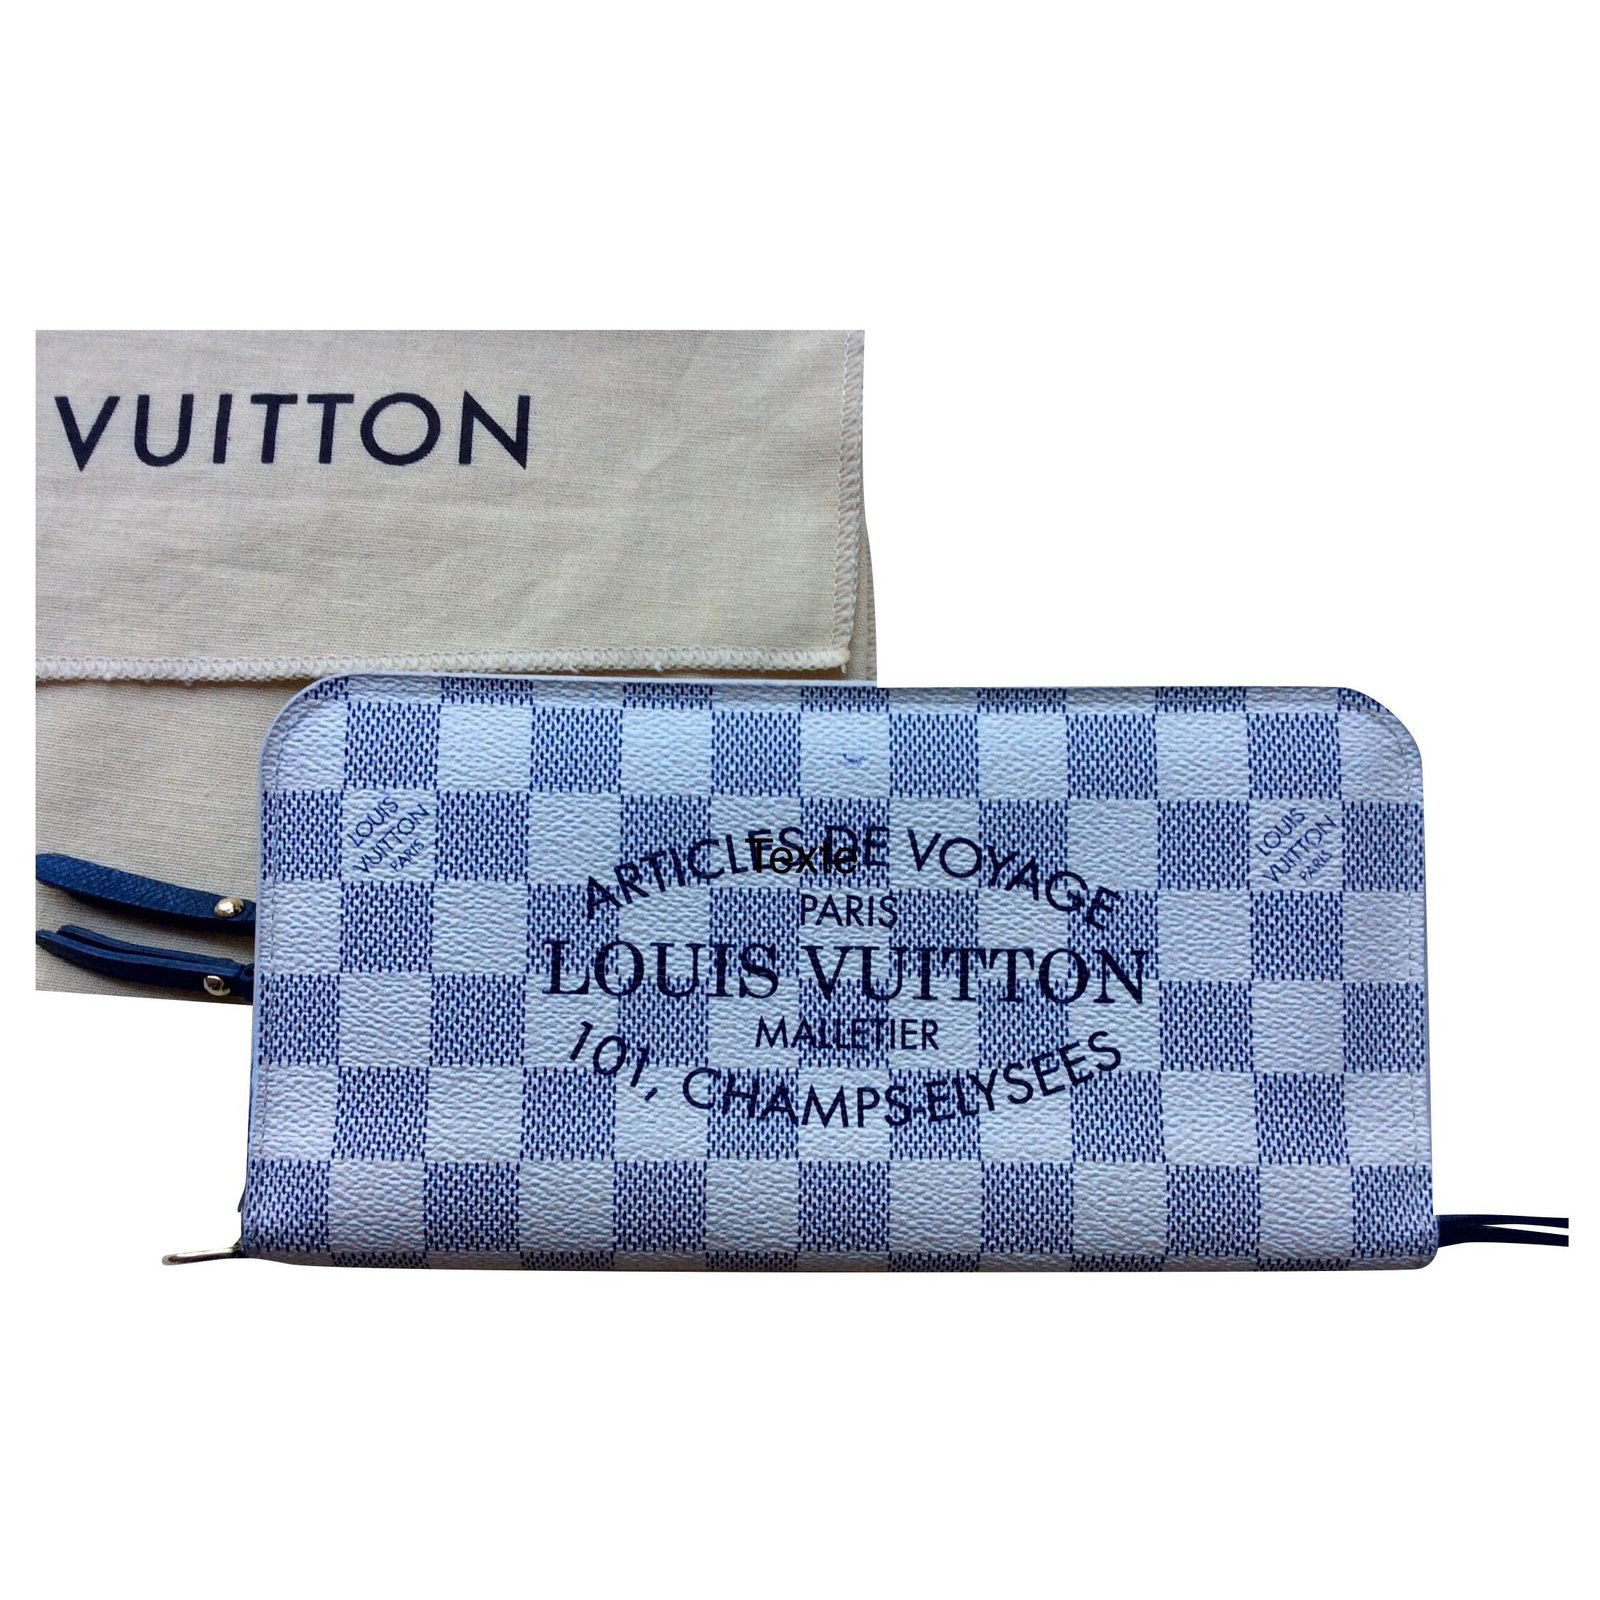 Brazza Louis Vuitton long wallet Damier Azur model Unusual Blue